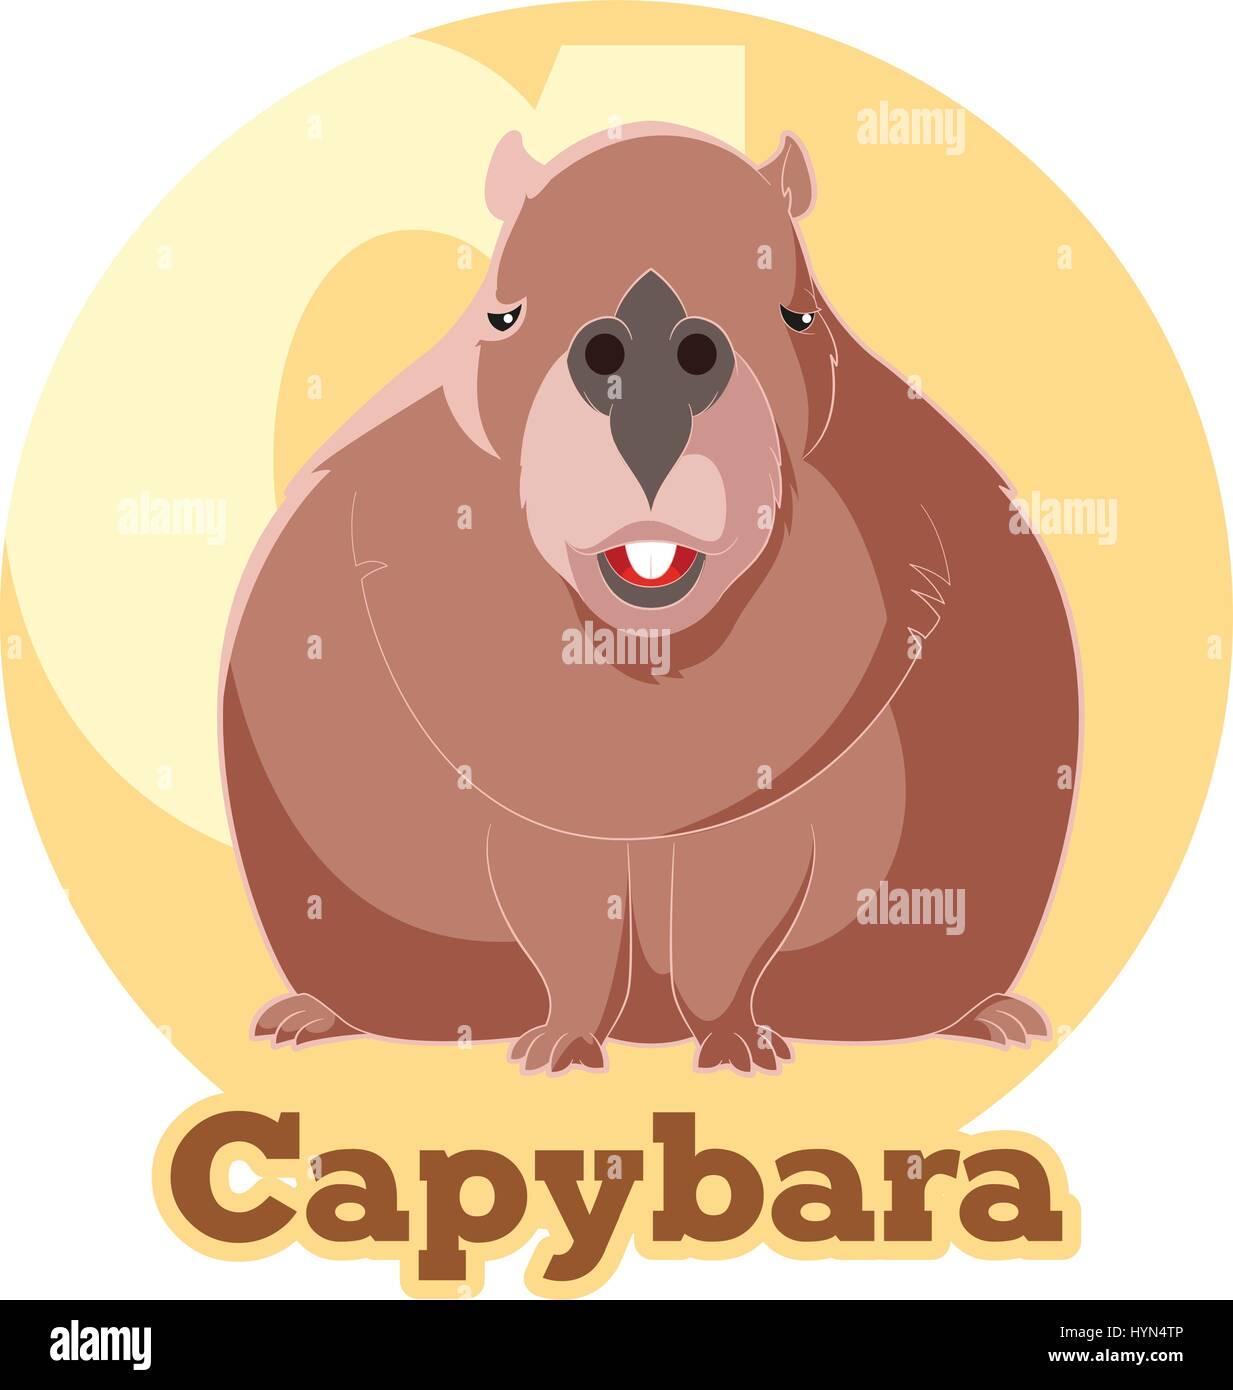 Vector image of the ABC Cartoon Capybara Stock Vector